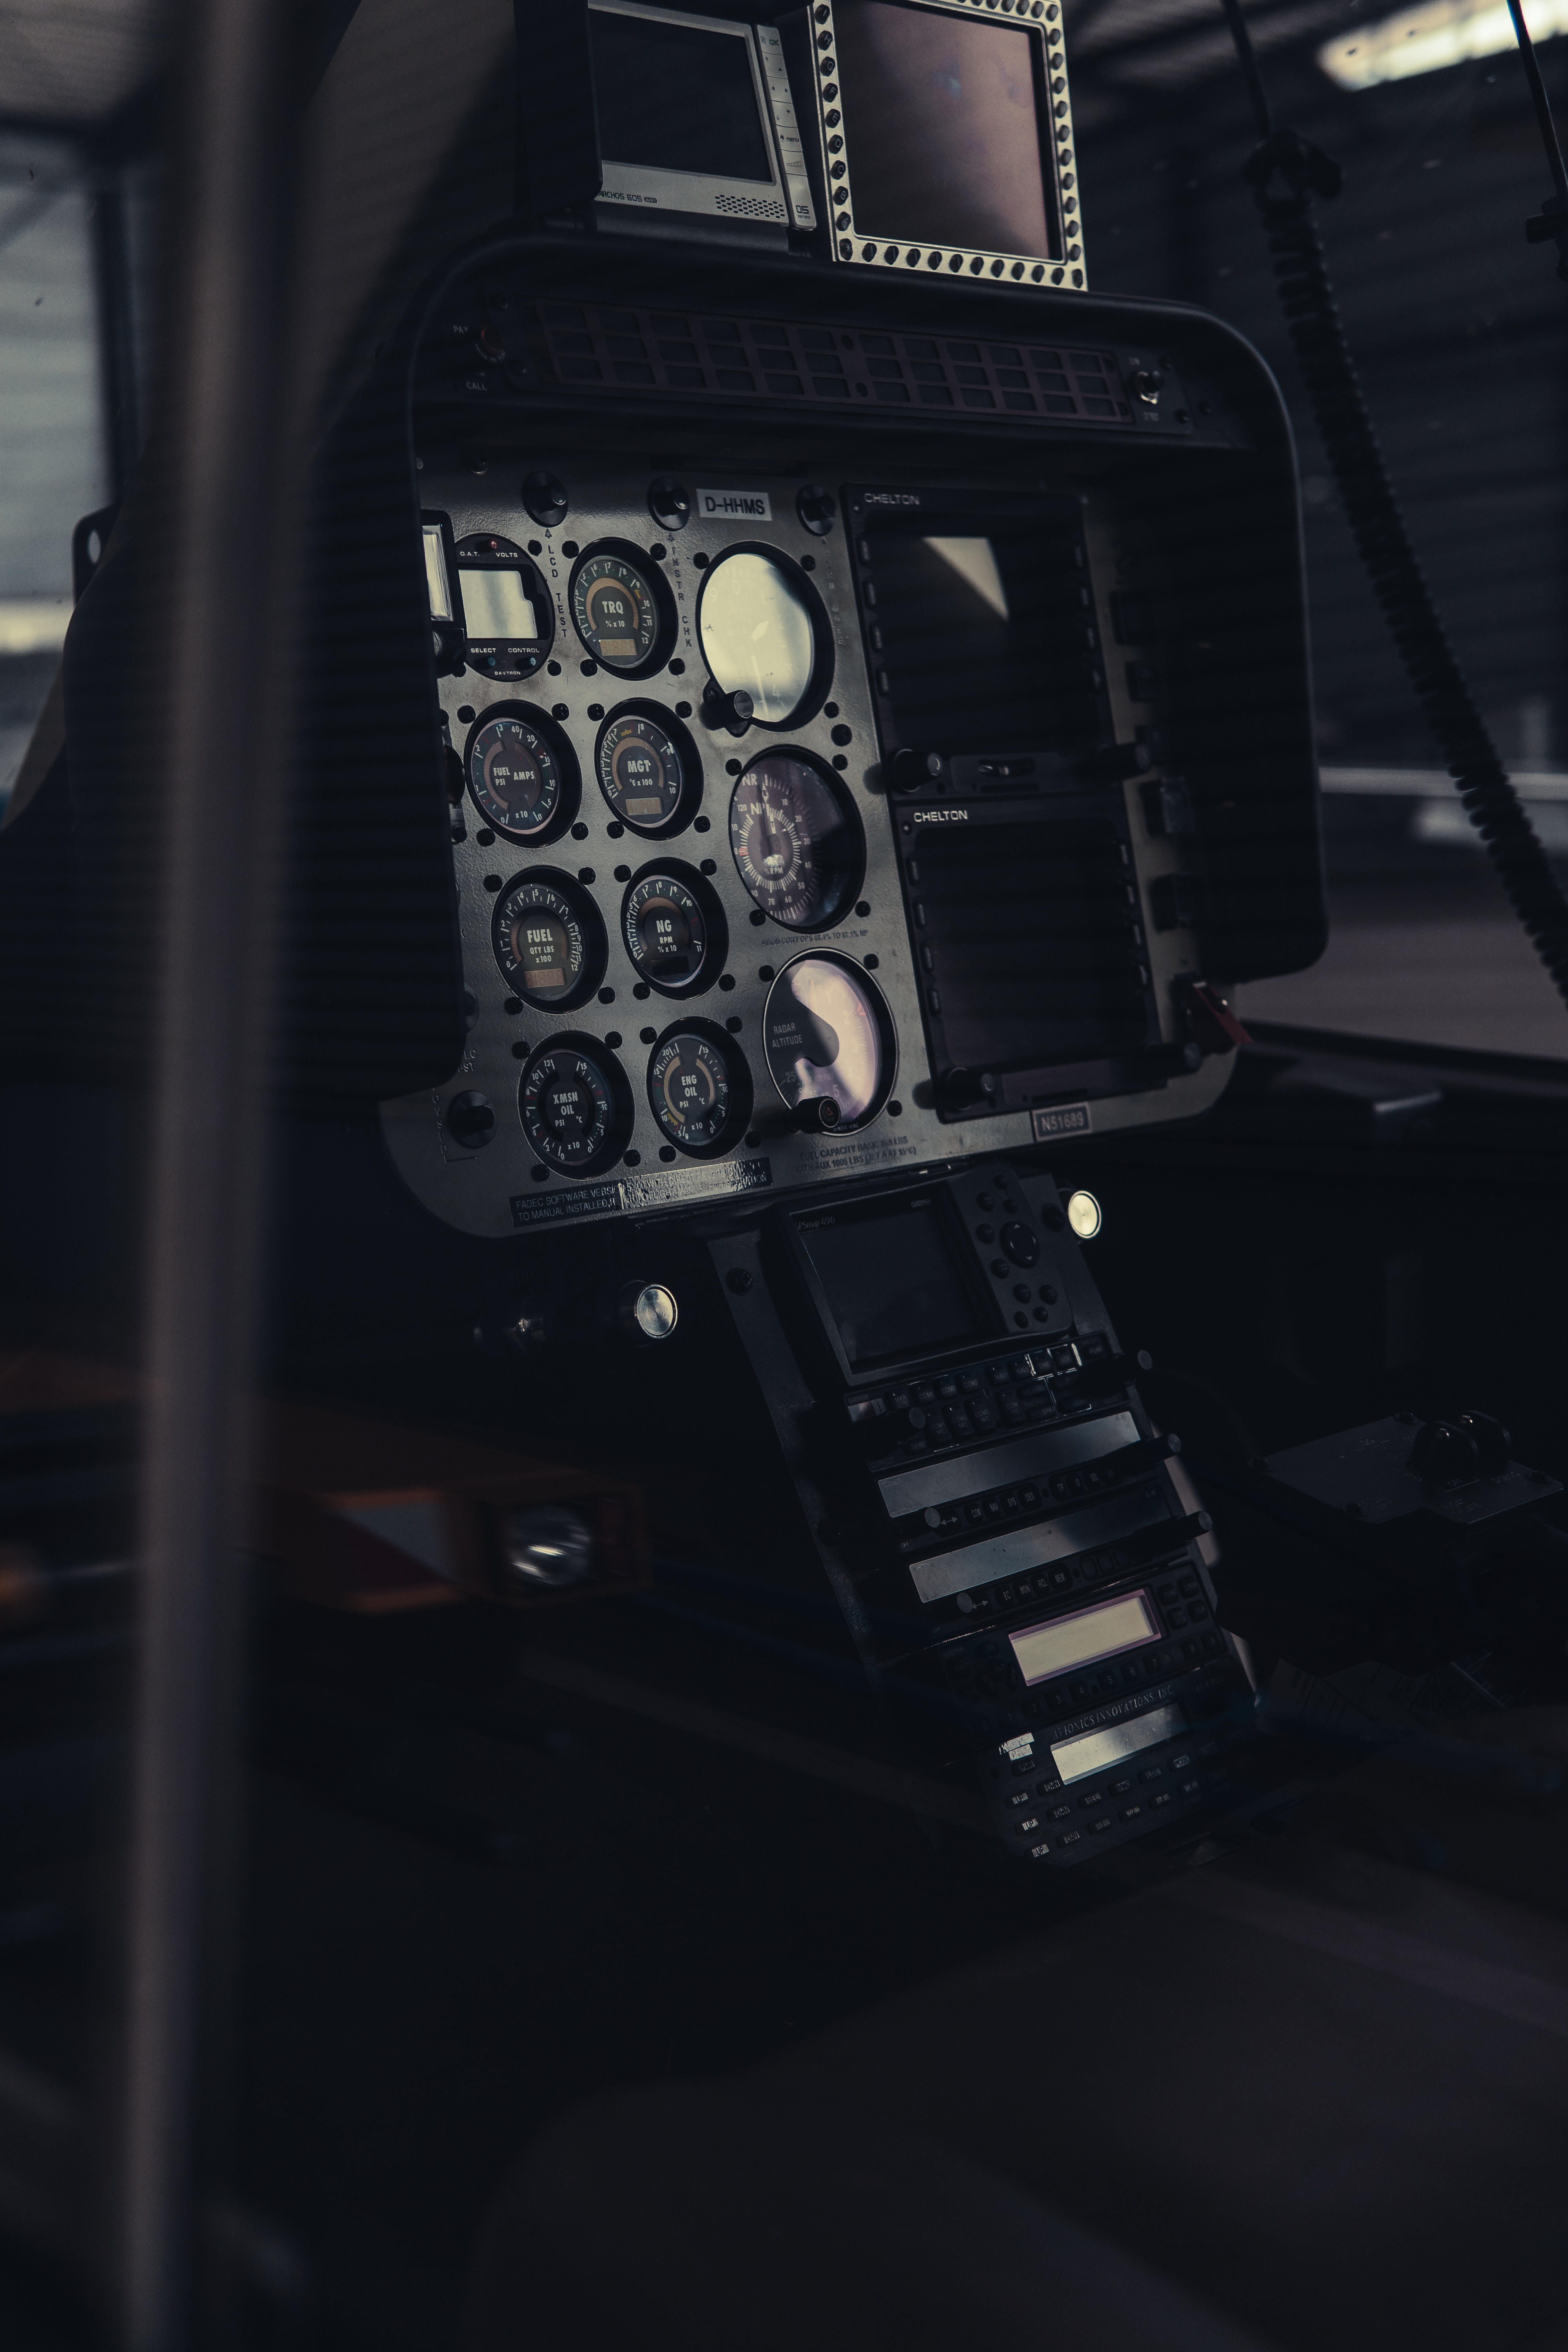 miscellanea, cockpit, miscellaneous, equipment, devices, flight deck, control, management